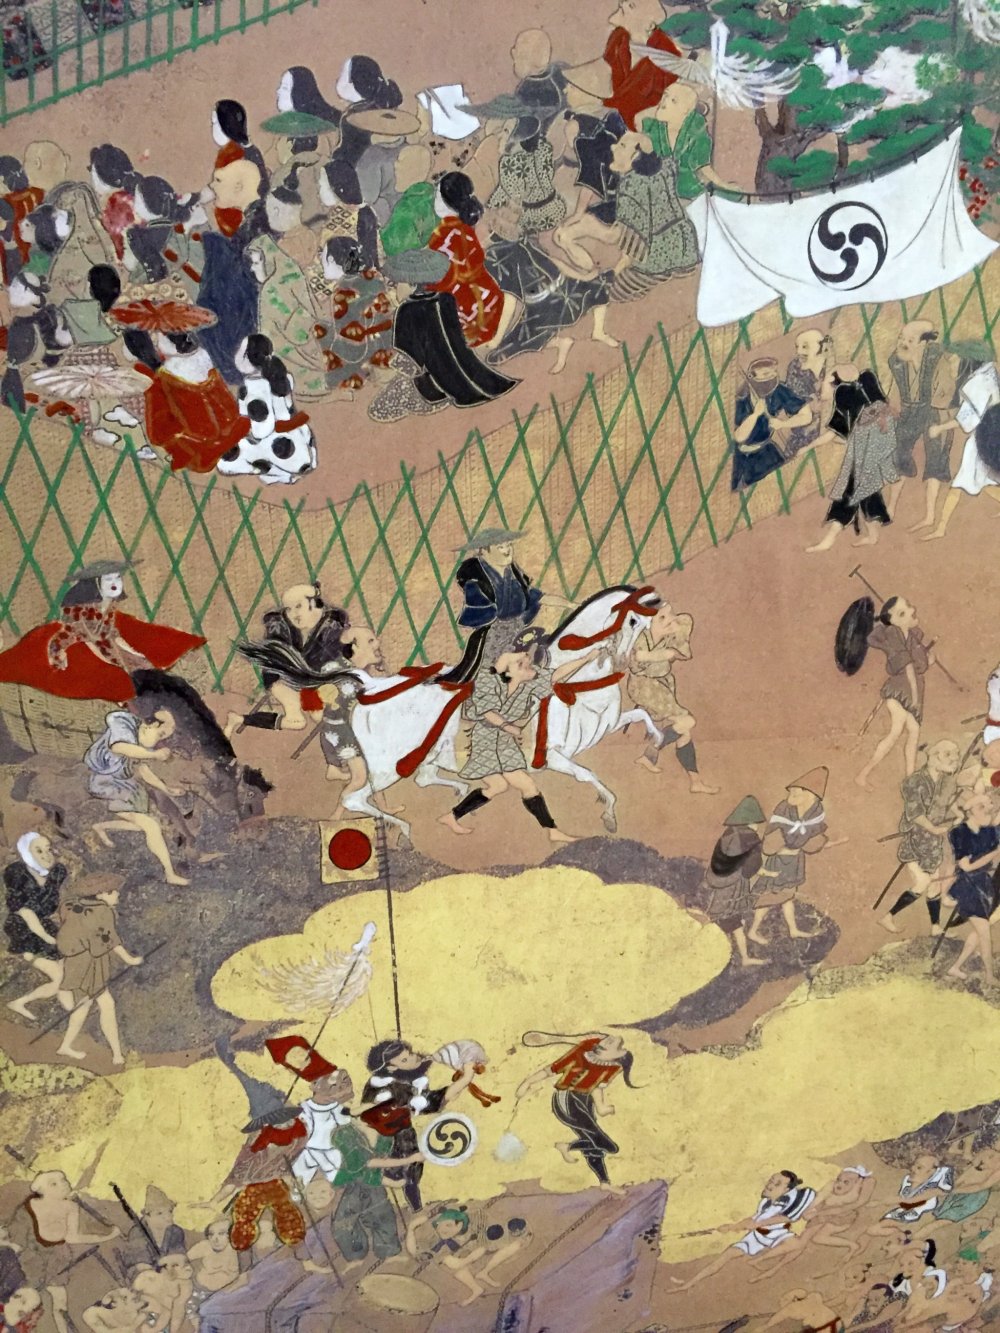 Традиционная японская ширма показывает сцены из жизни в период Эдо. Фото крупным планом